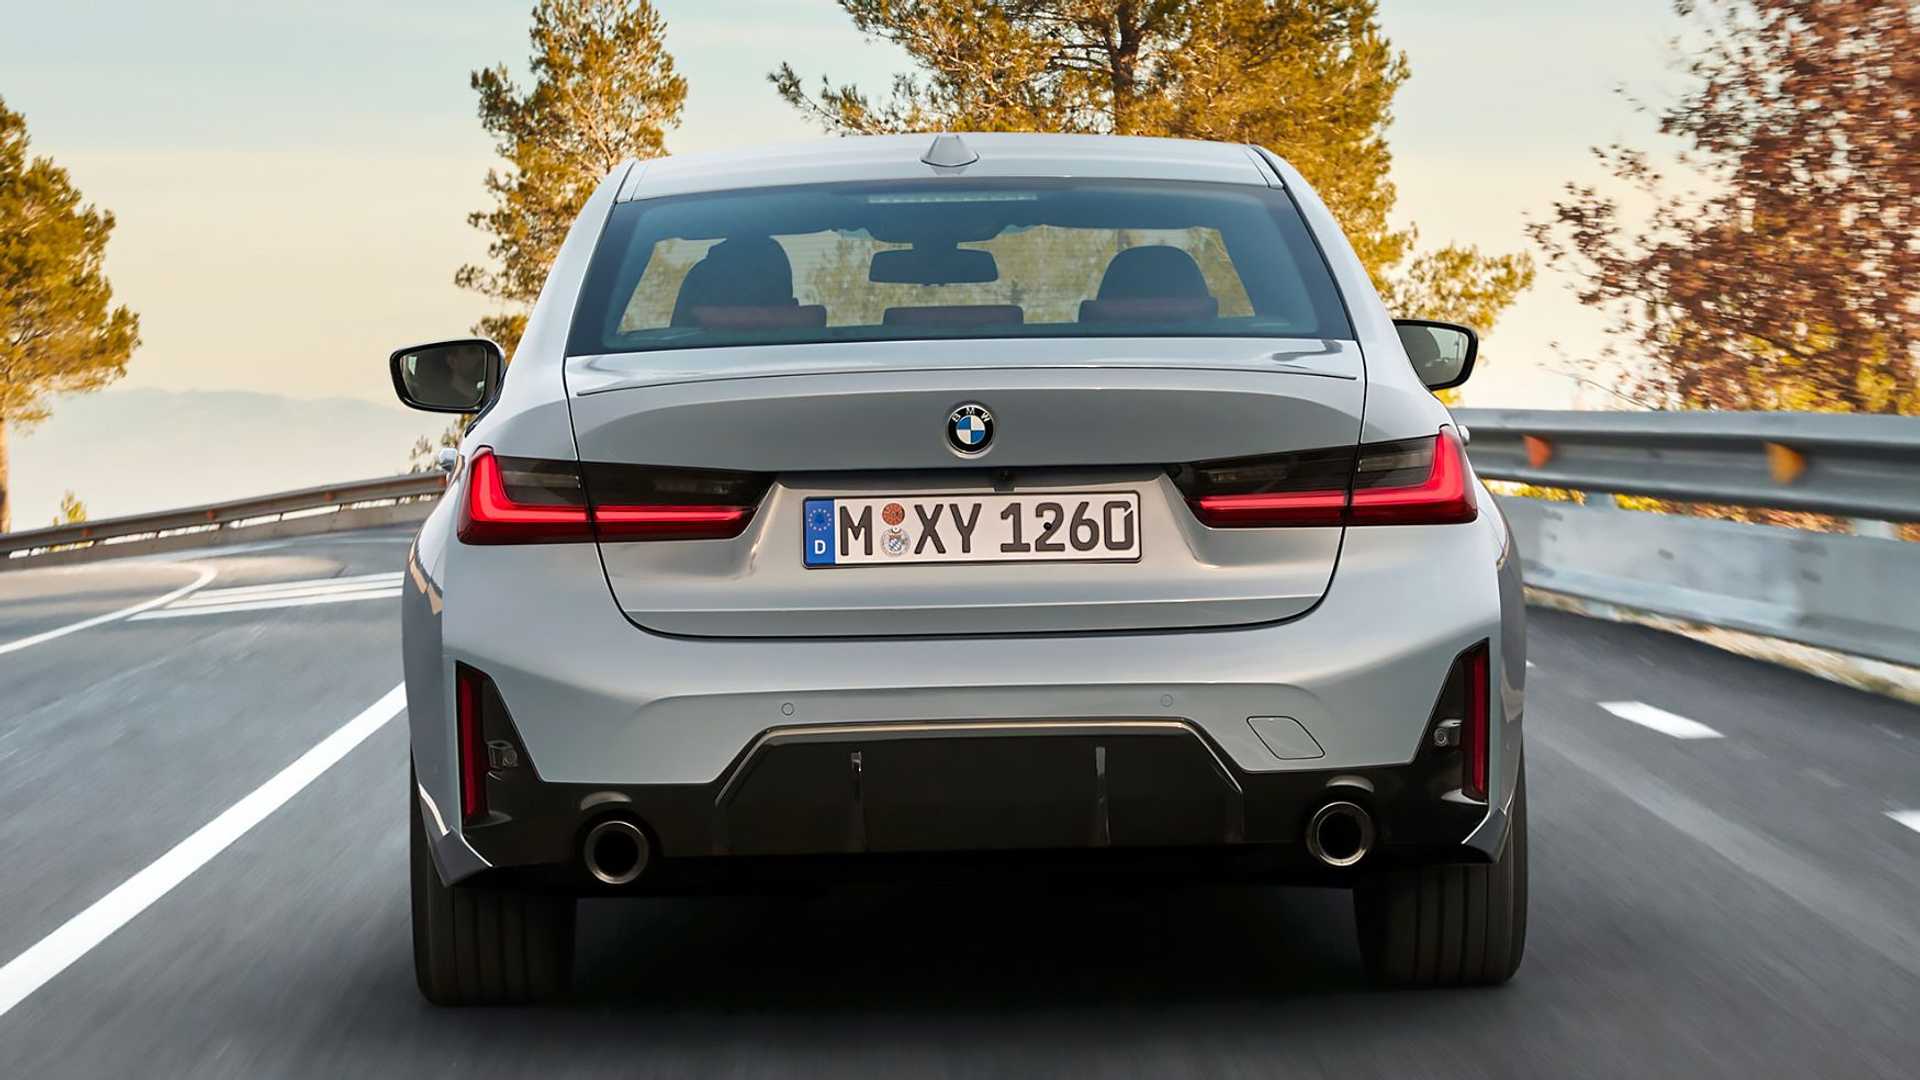 BMW Serii 3 LCI zaprezentowane - zmiany pod niemal każdym względem